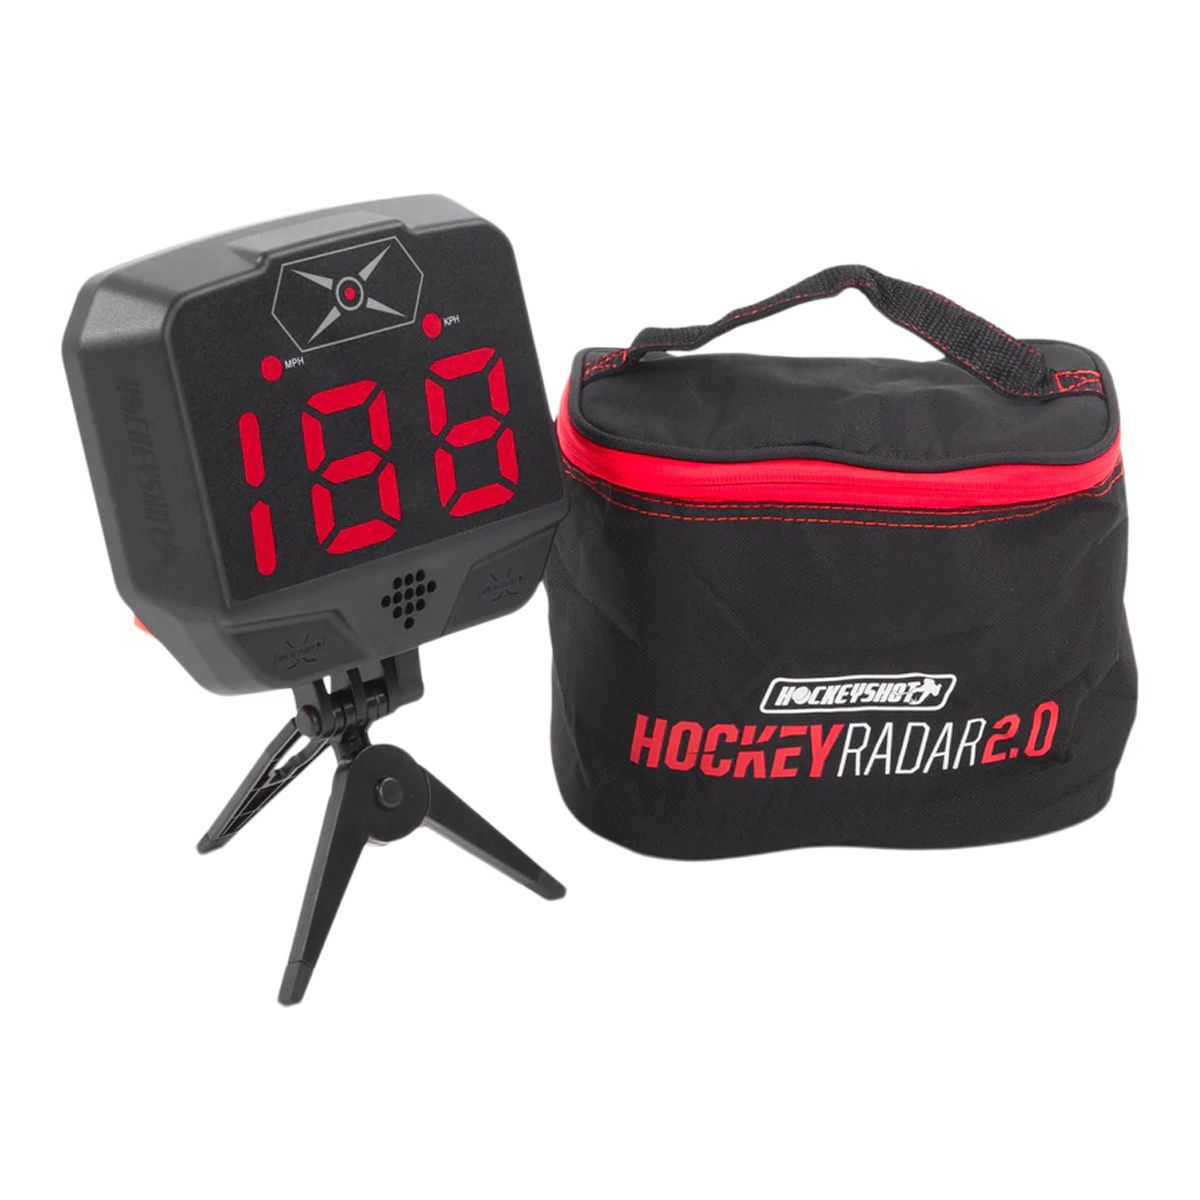 HockeyShot Extreme Hockey Radar 2.0